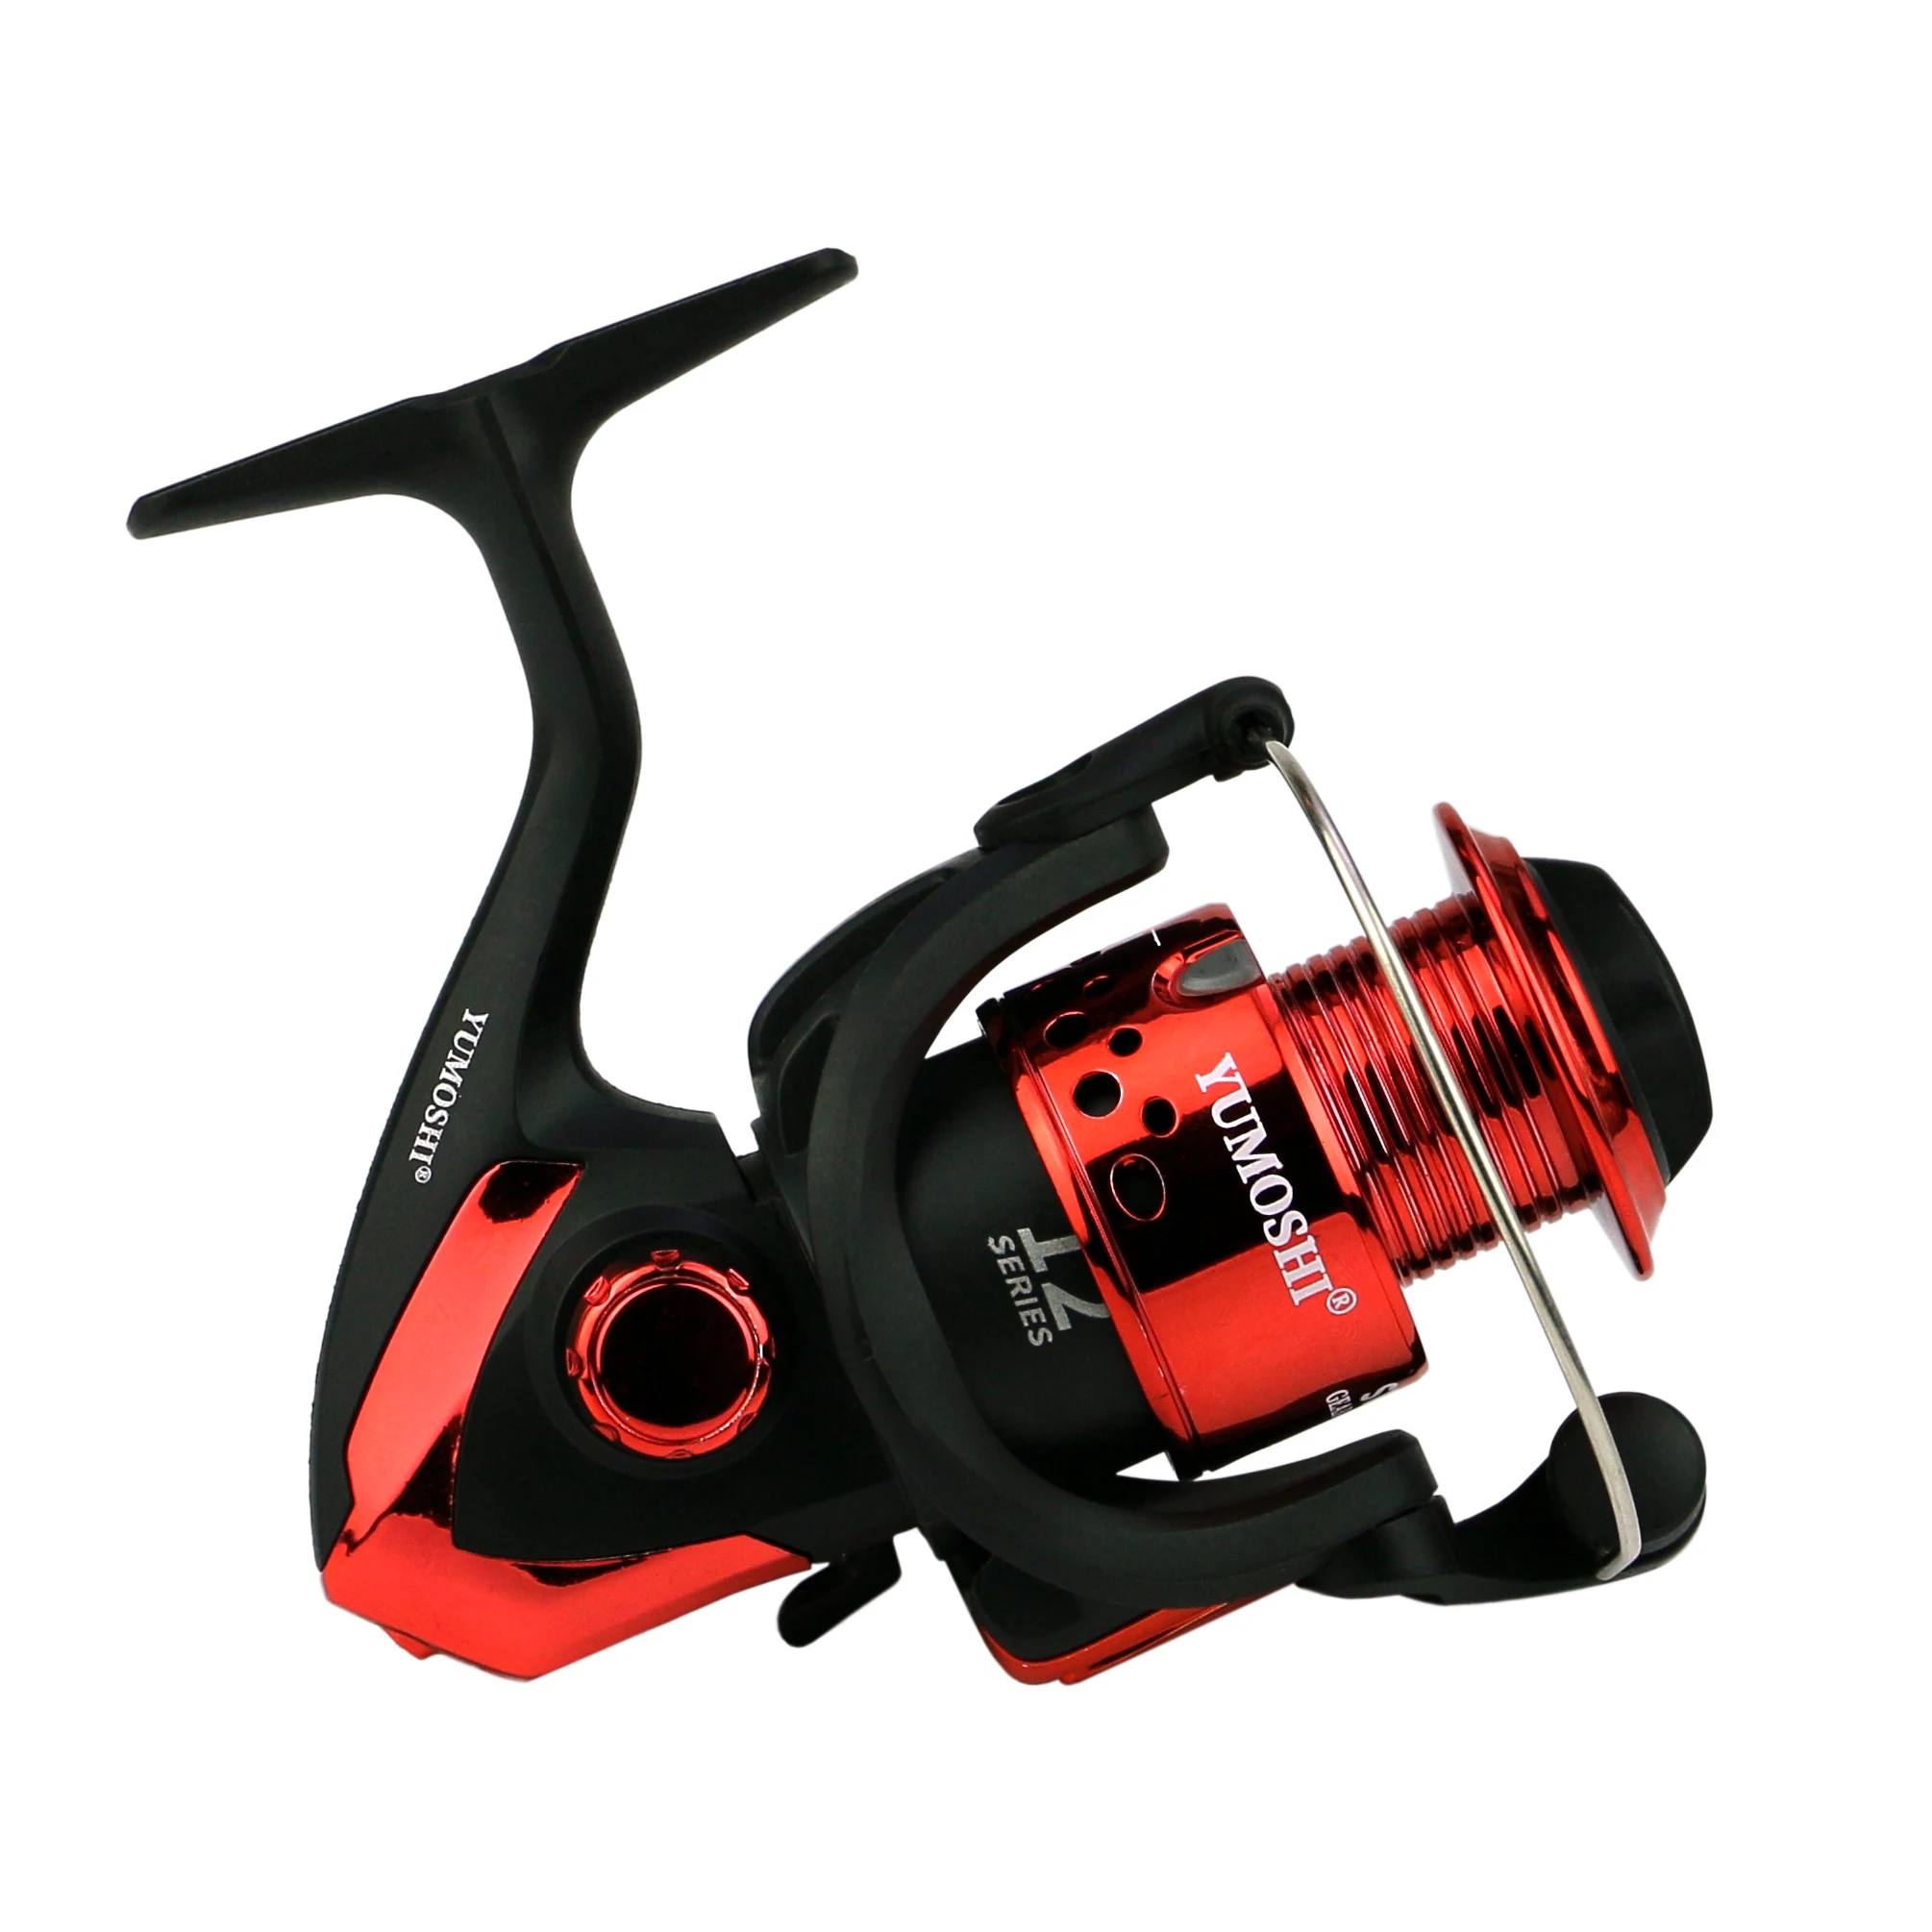 New 3000 4000 5000 6000 7000 SP-Series 5.5:1 Black Red Fishing Reel Wear-resistant Spinning Wheel Fishing Accessories enlarge